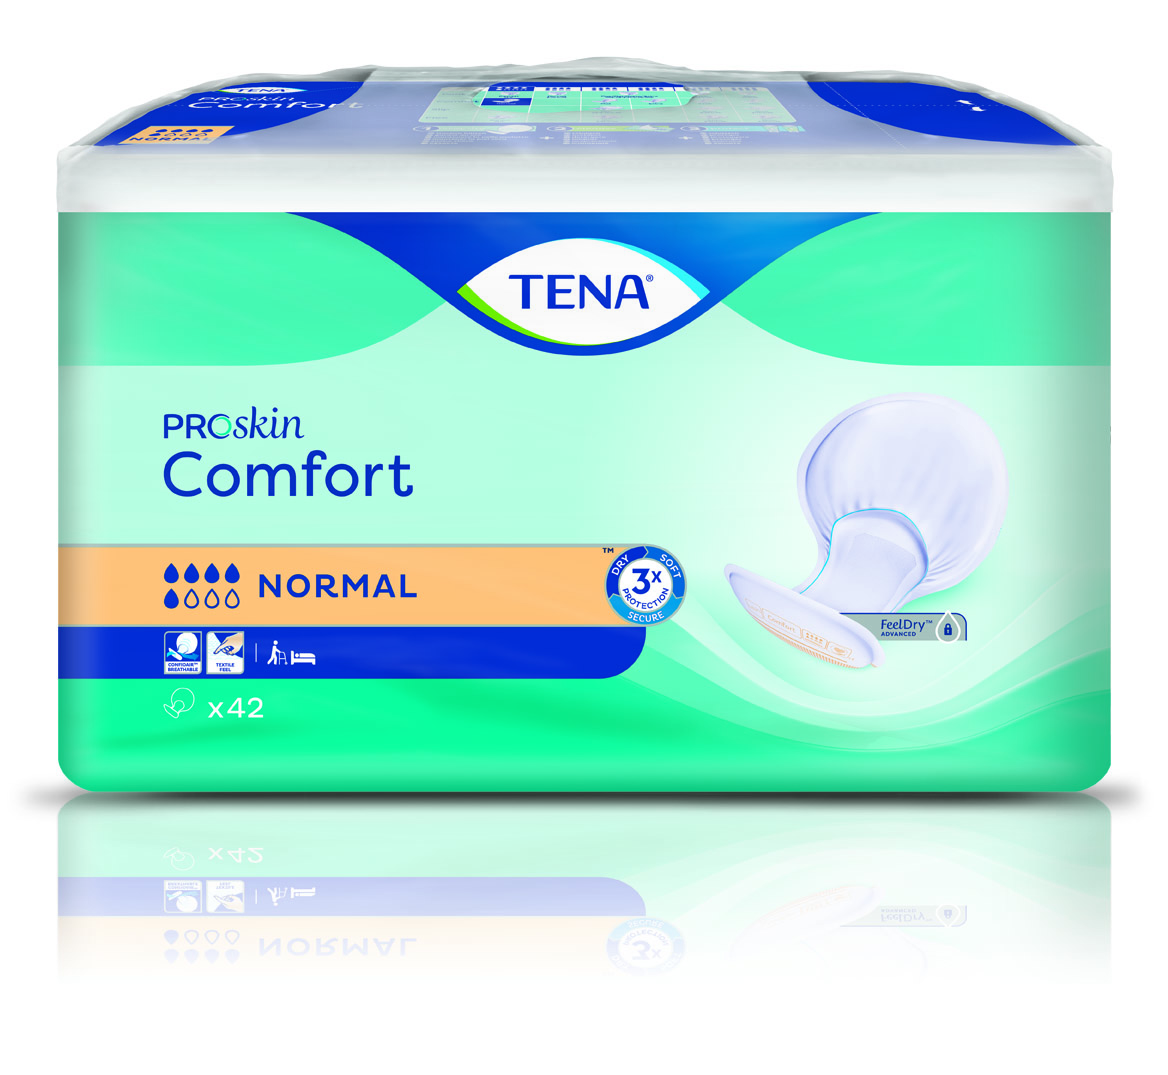 Abbildung eines Beutels der Vorlage TenaProskin Comfort, Saugstärke Normal